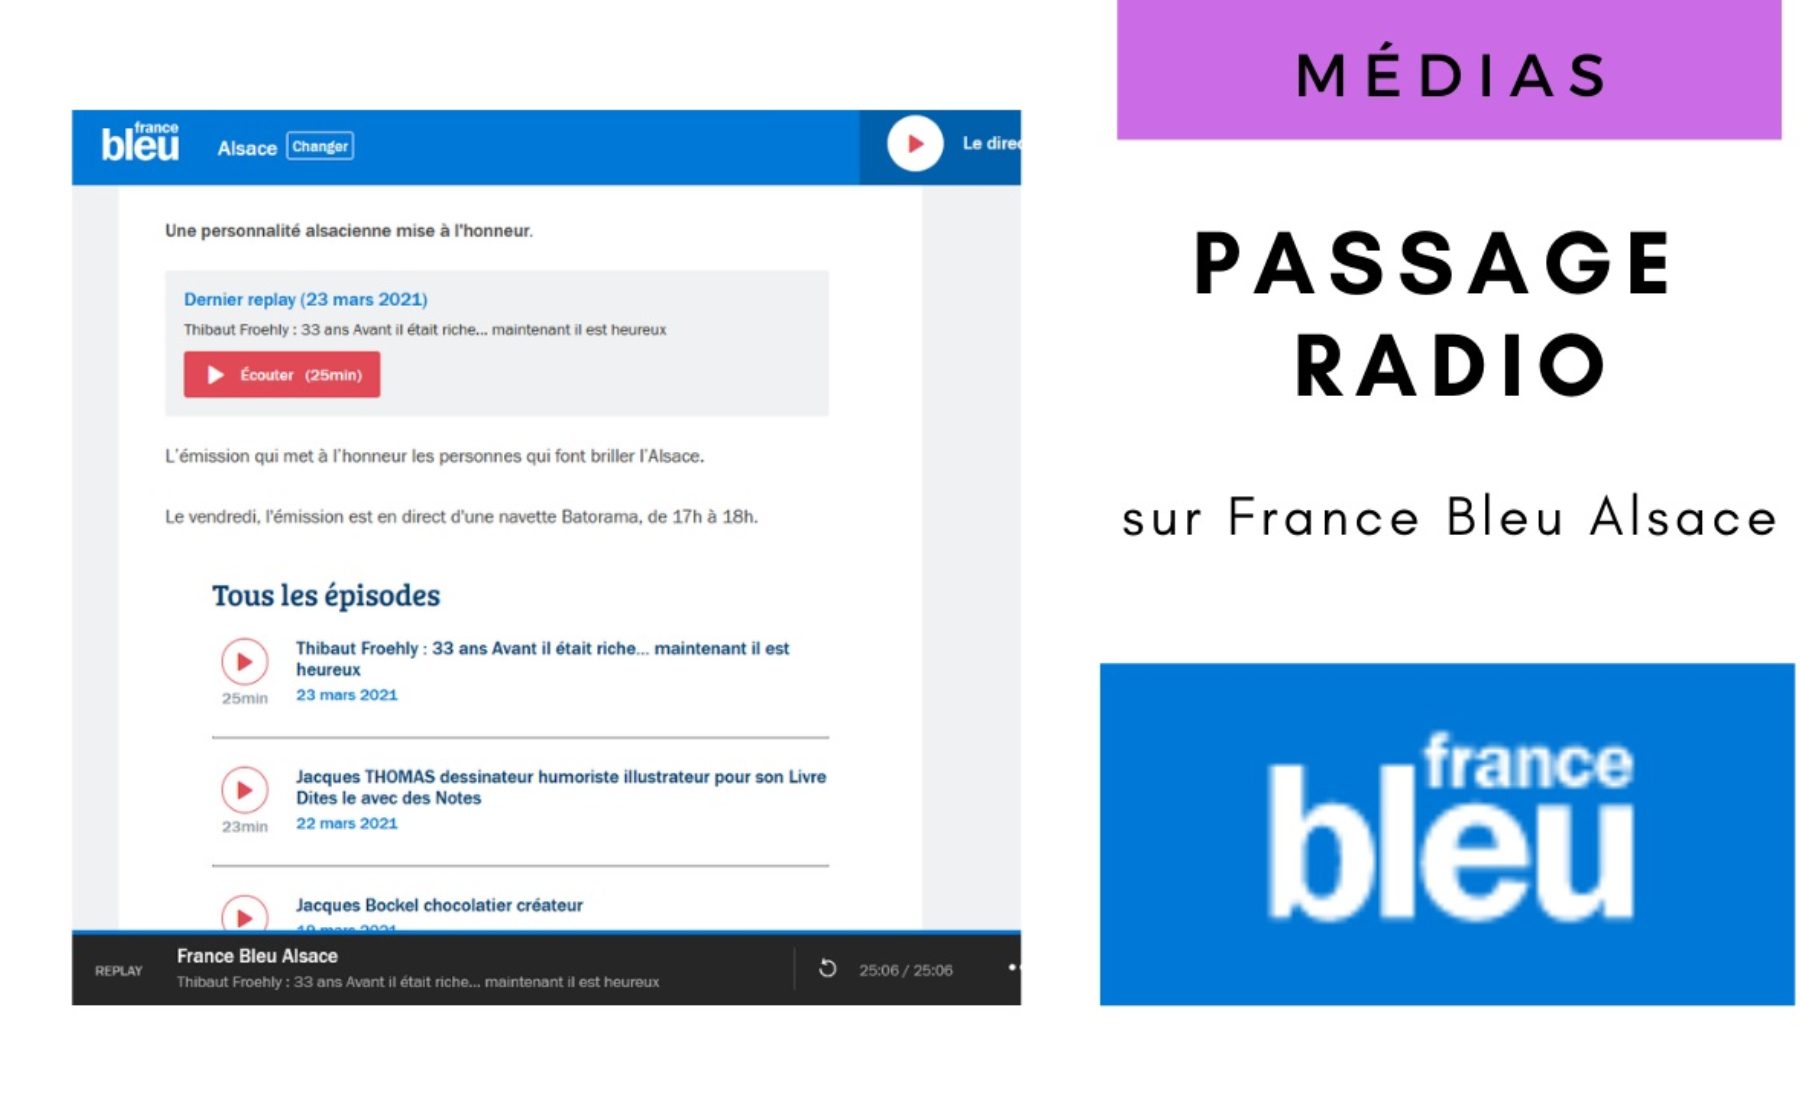 Passage radio sur France Bleu Alsace le 23 mars 2021